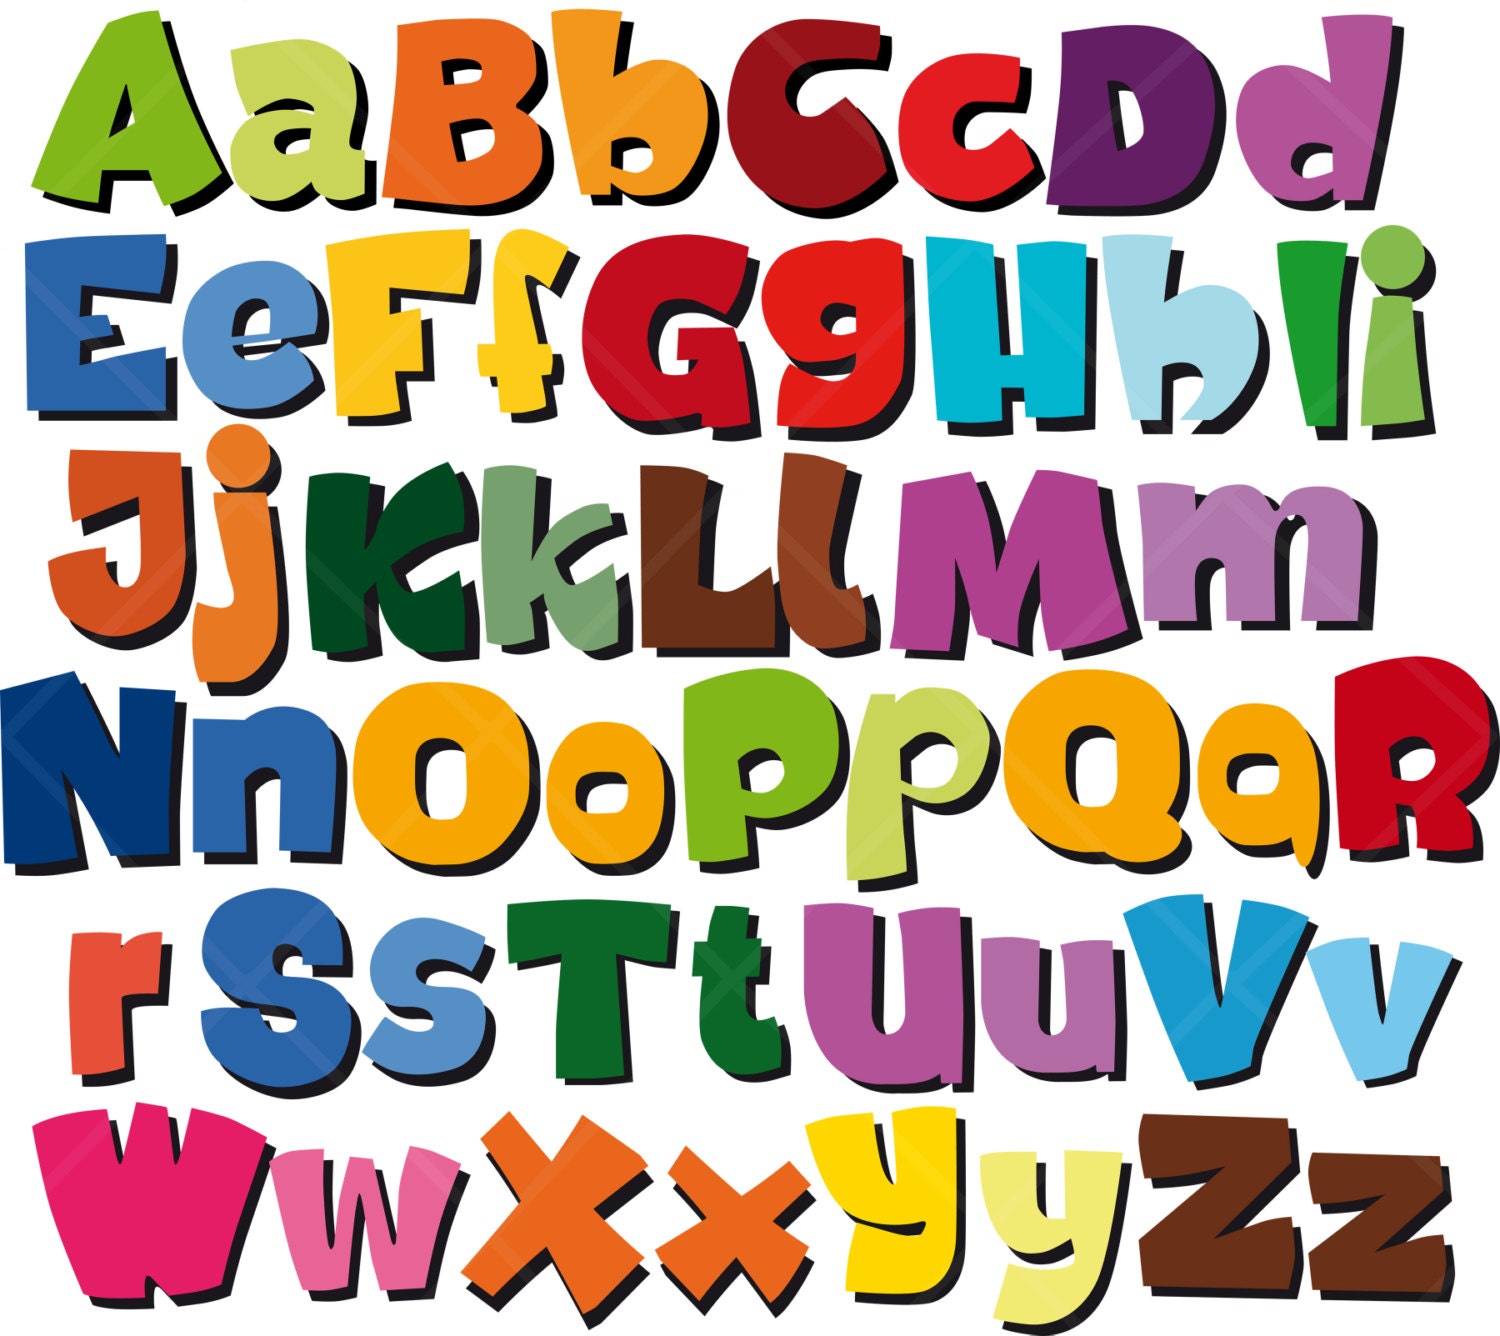 Google compra el dominio de todo el alfabeto (abcdefghijklmnopqrstuvwxyz.com)